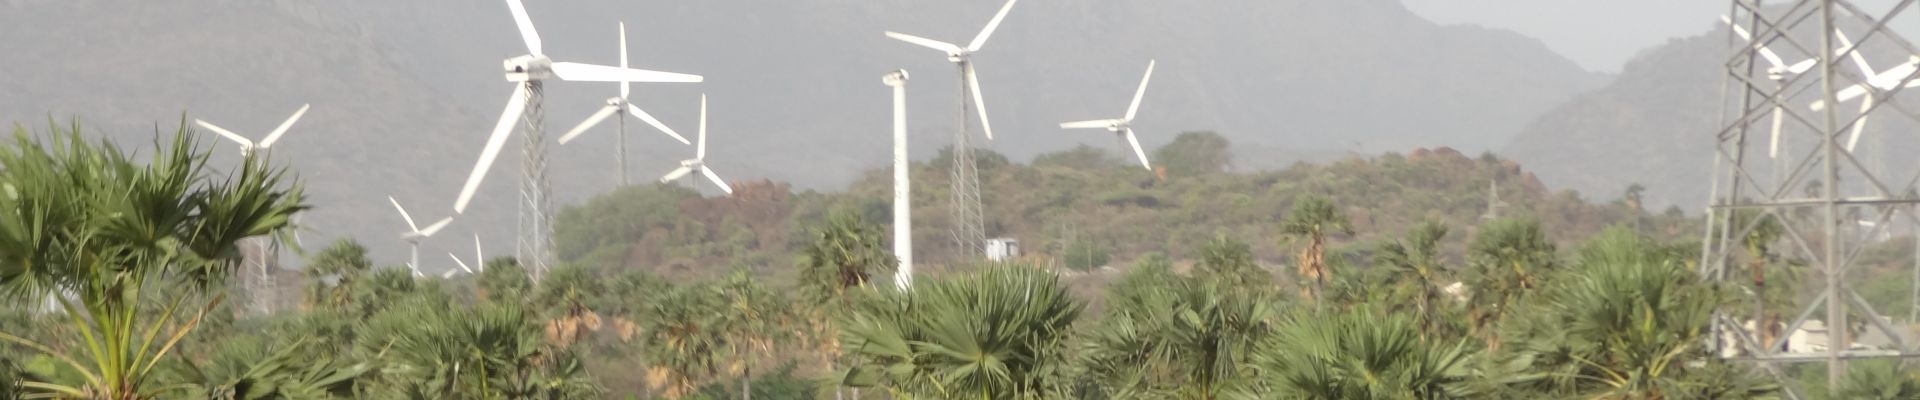 Servicios auxiliares a través de parques eólicos en India